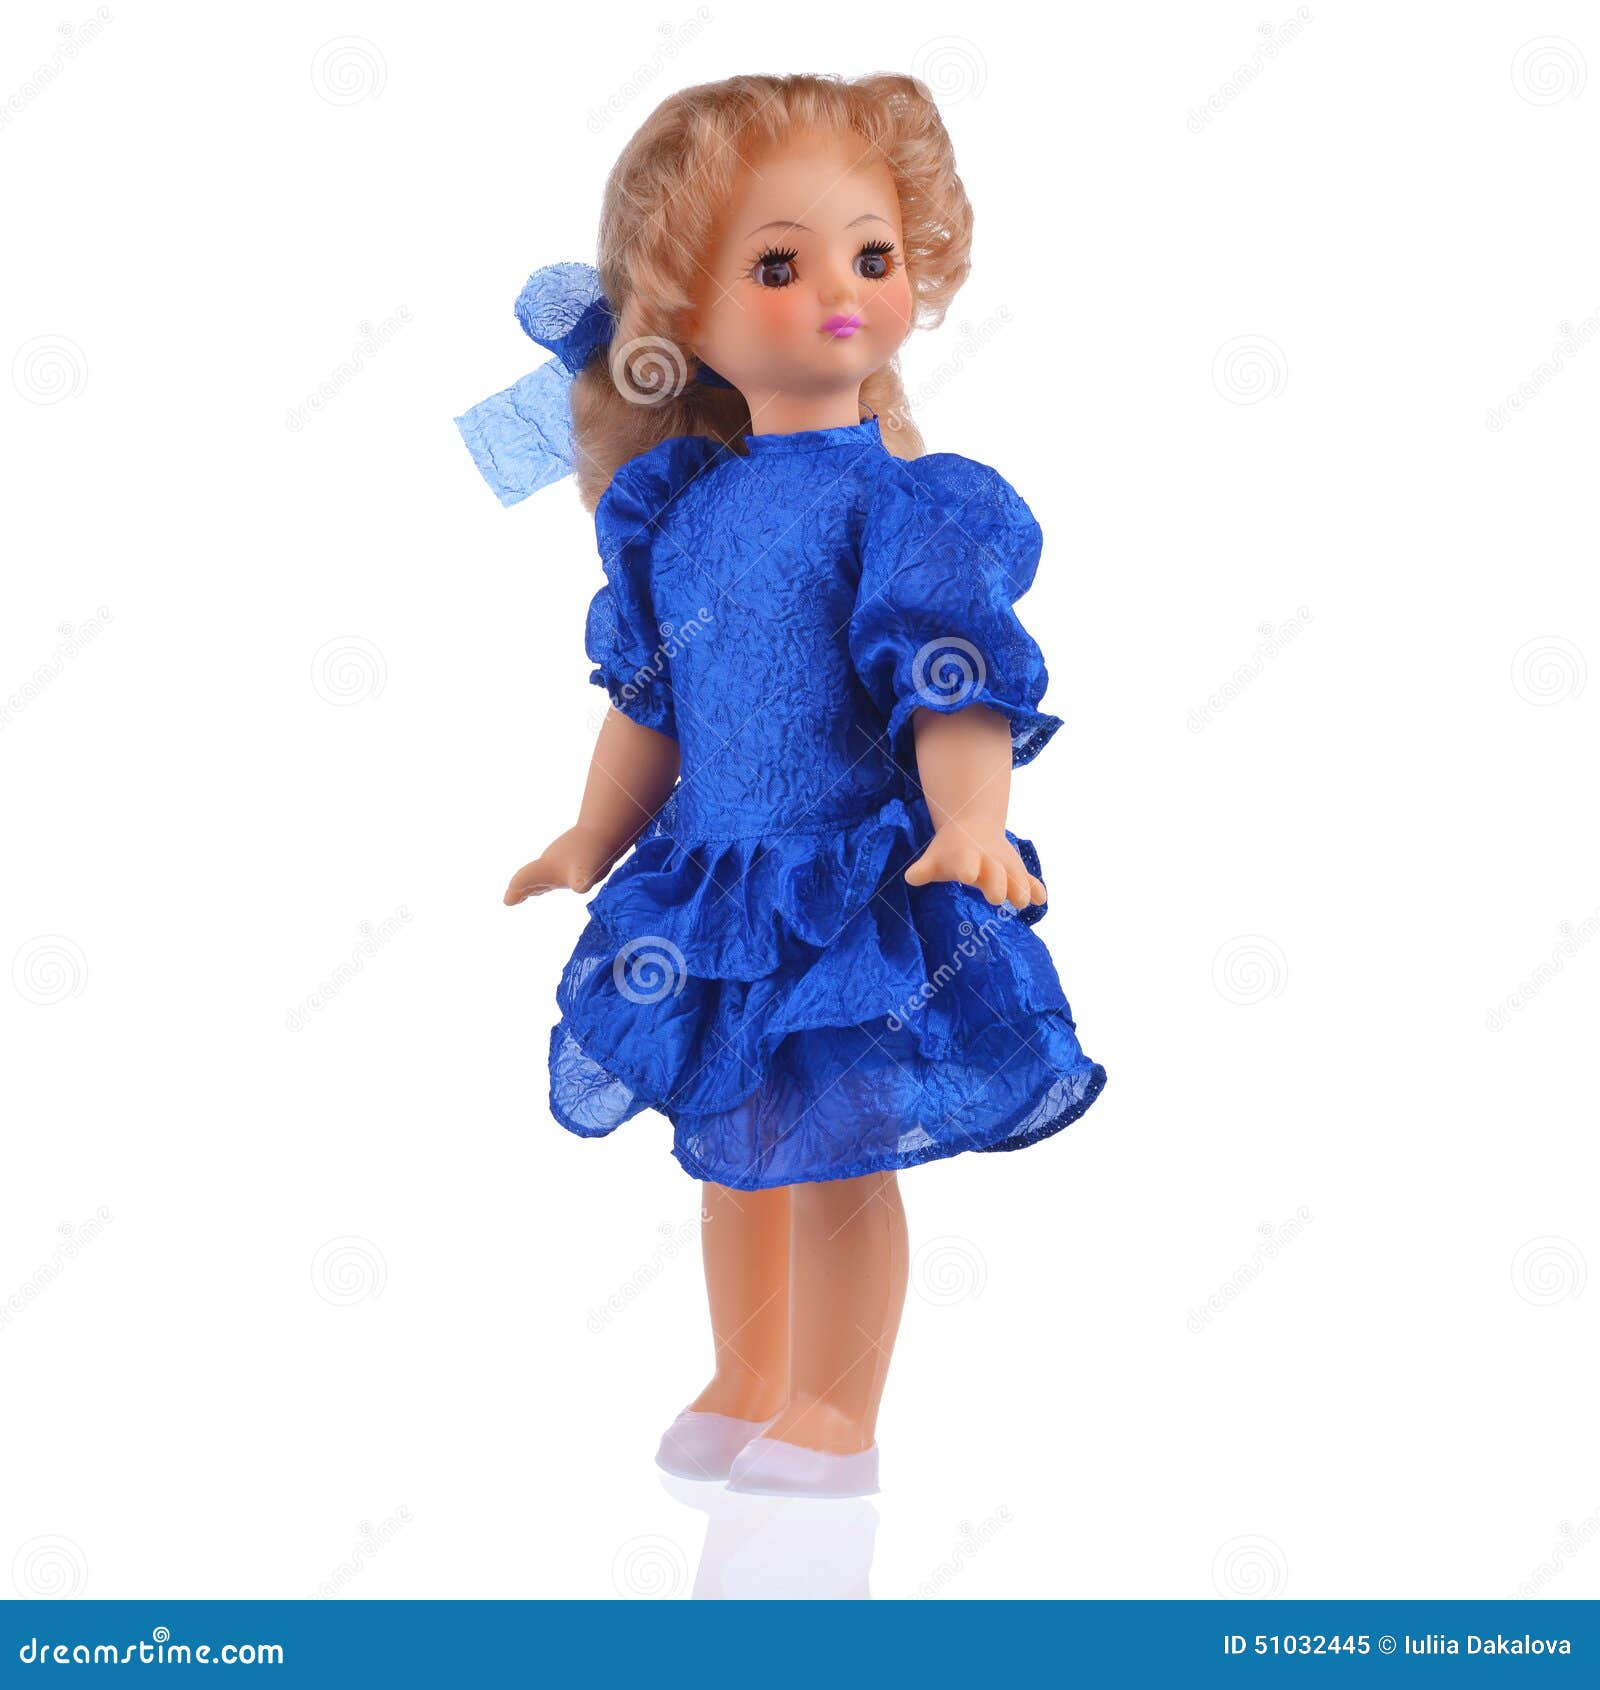 Muñeca en vestido azul imagen de archivo. Imagen de muchacha - 51032445